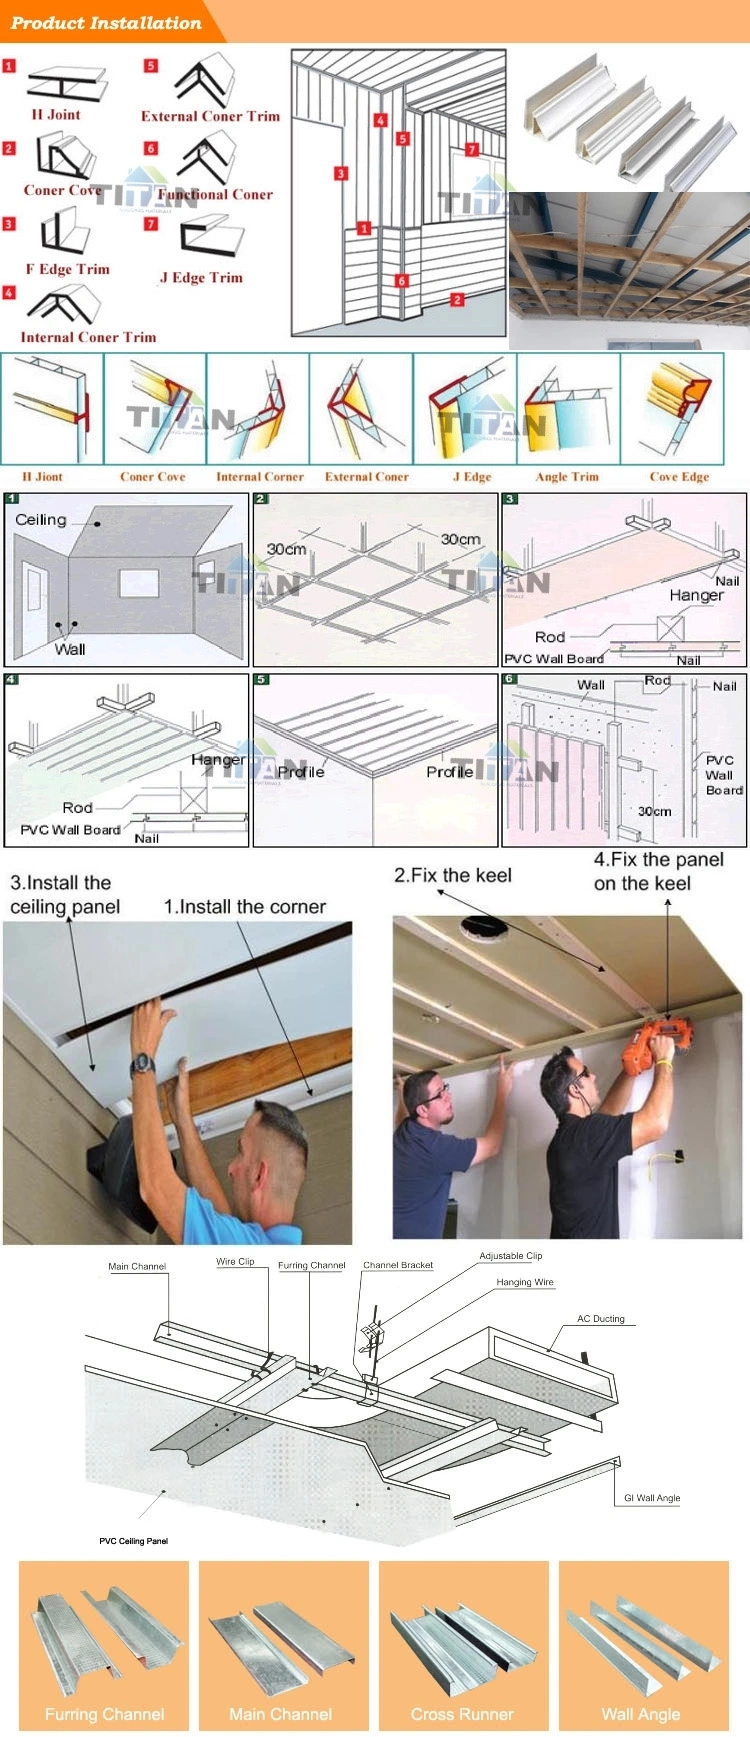 Good Quality PVC Wall Ceiling Panel PVC Wall Panel Plastic Bathroom Wall Cladding PVC Panel